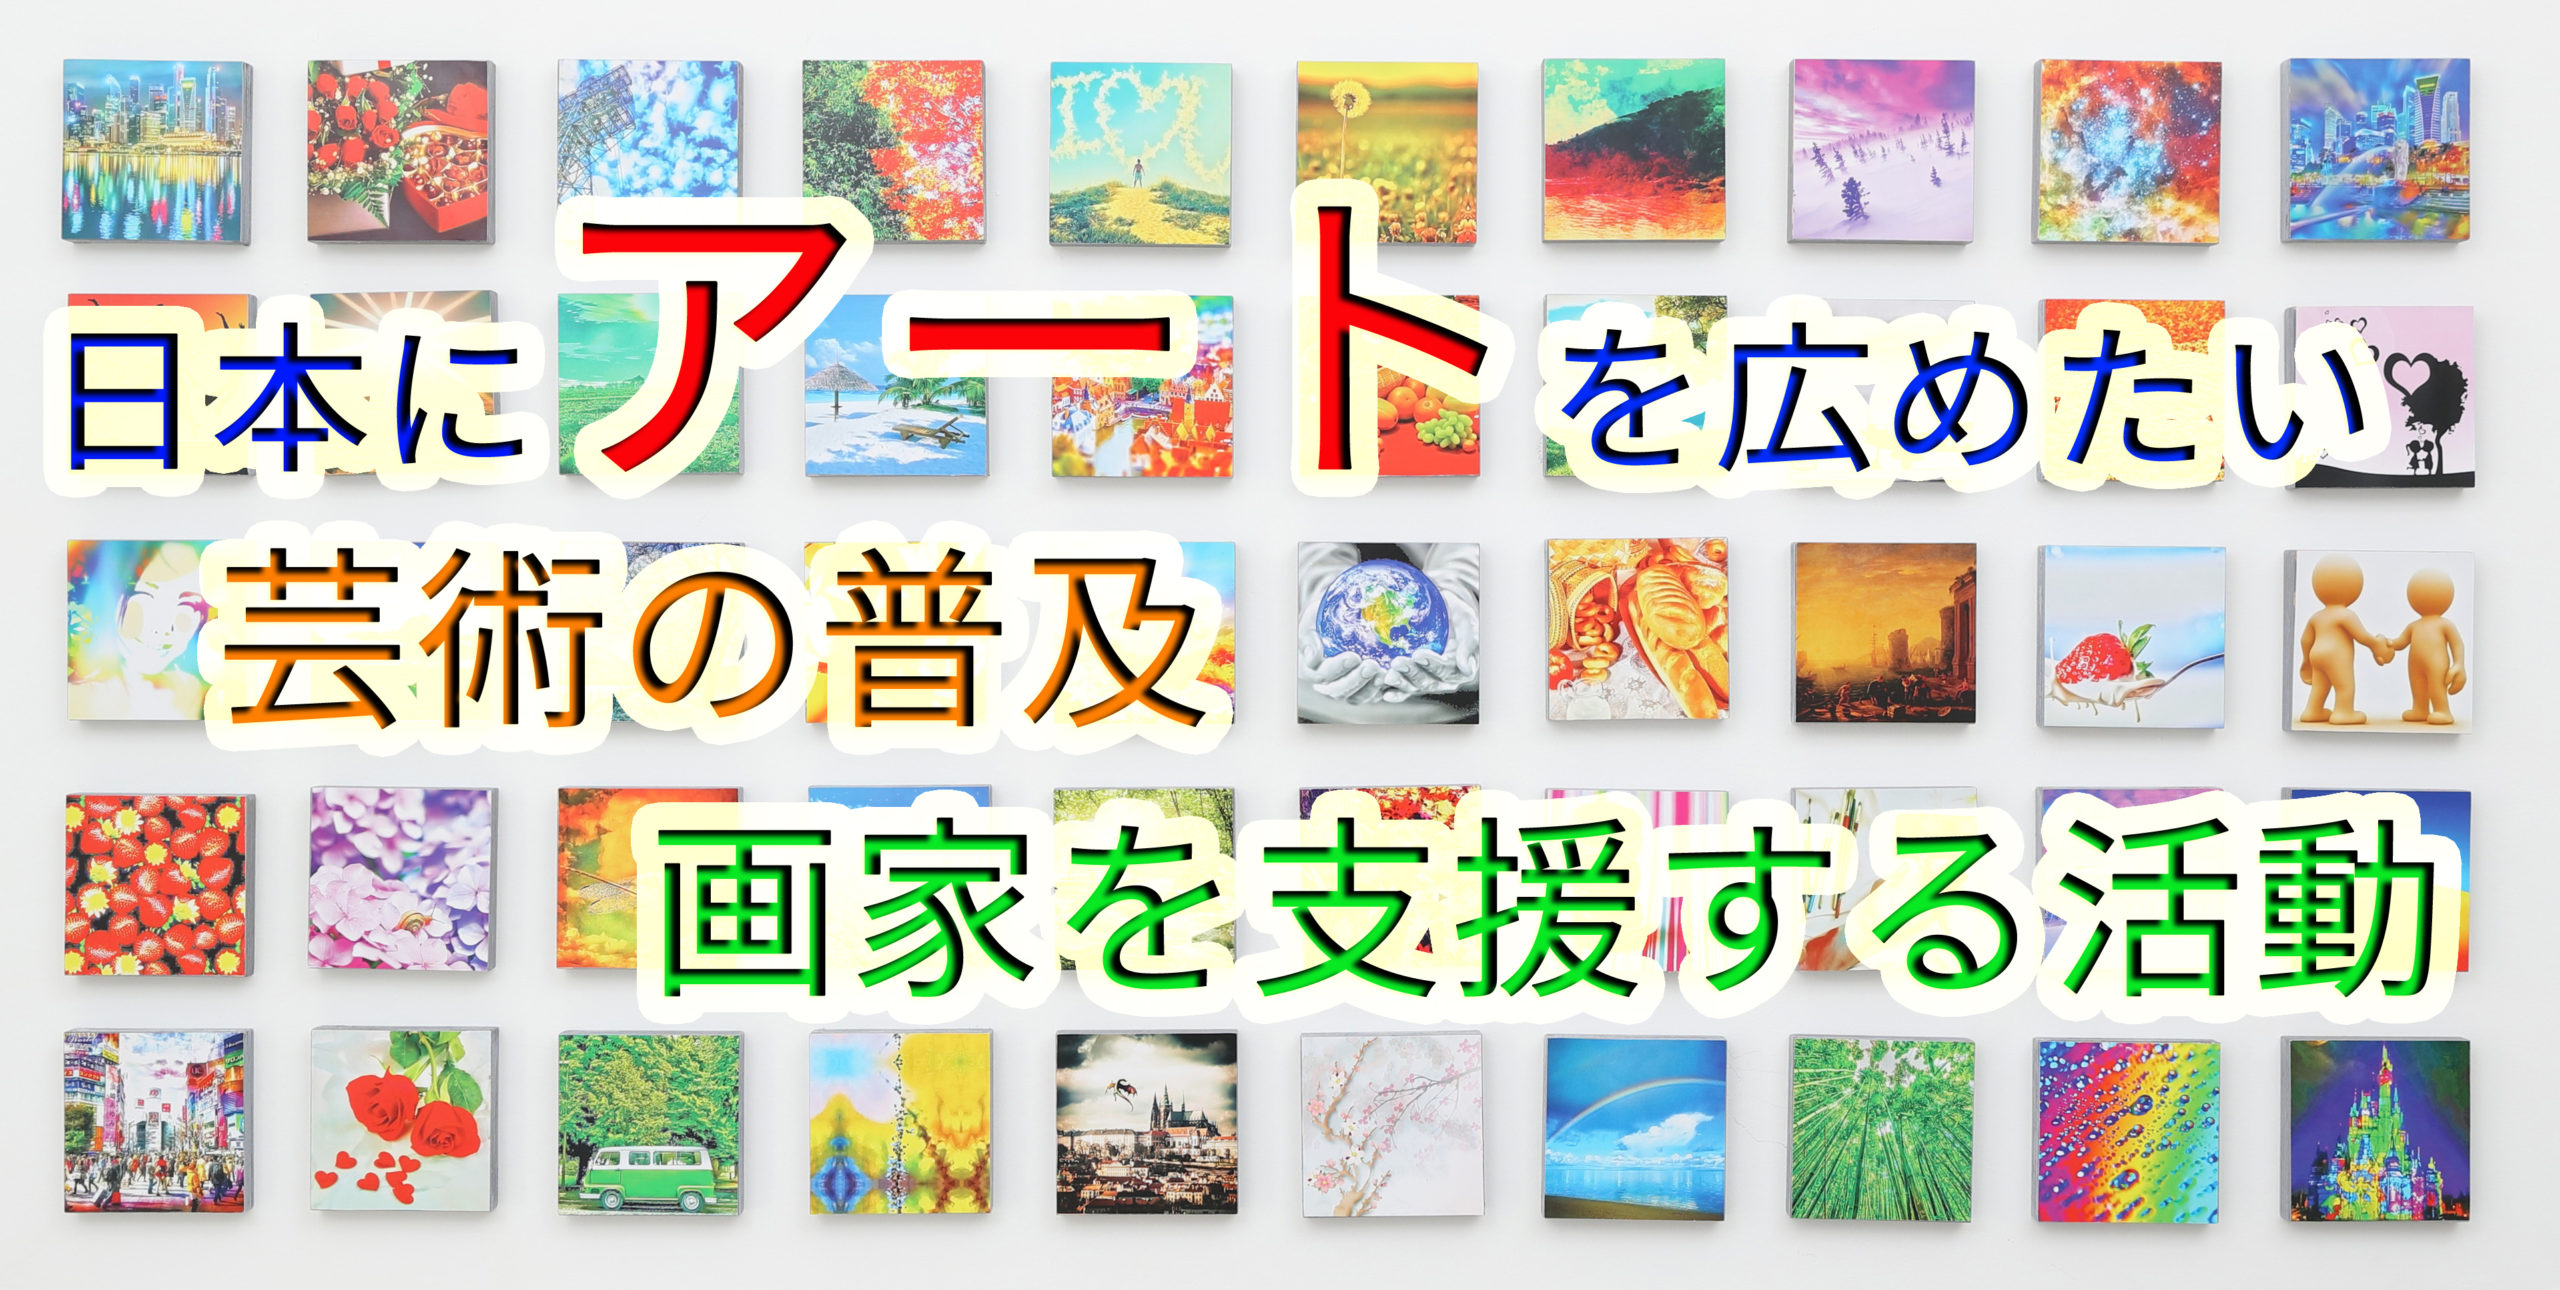 日本にアートを広めたい【芸術の普及・画家を支援する活動】